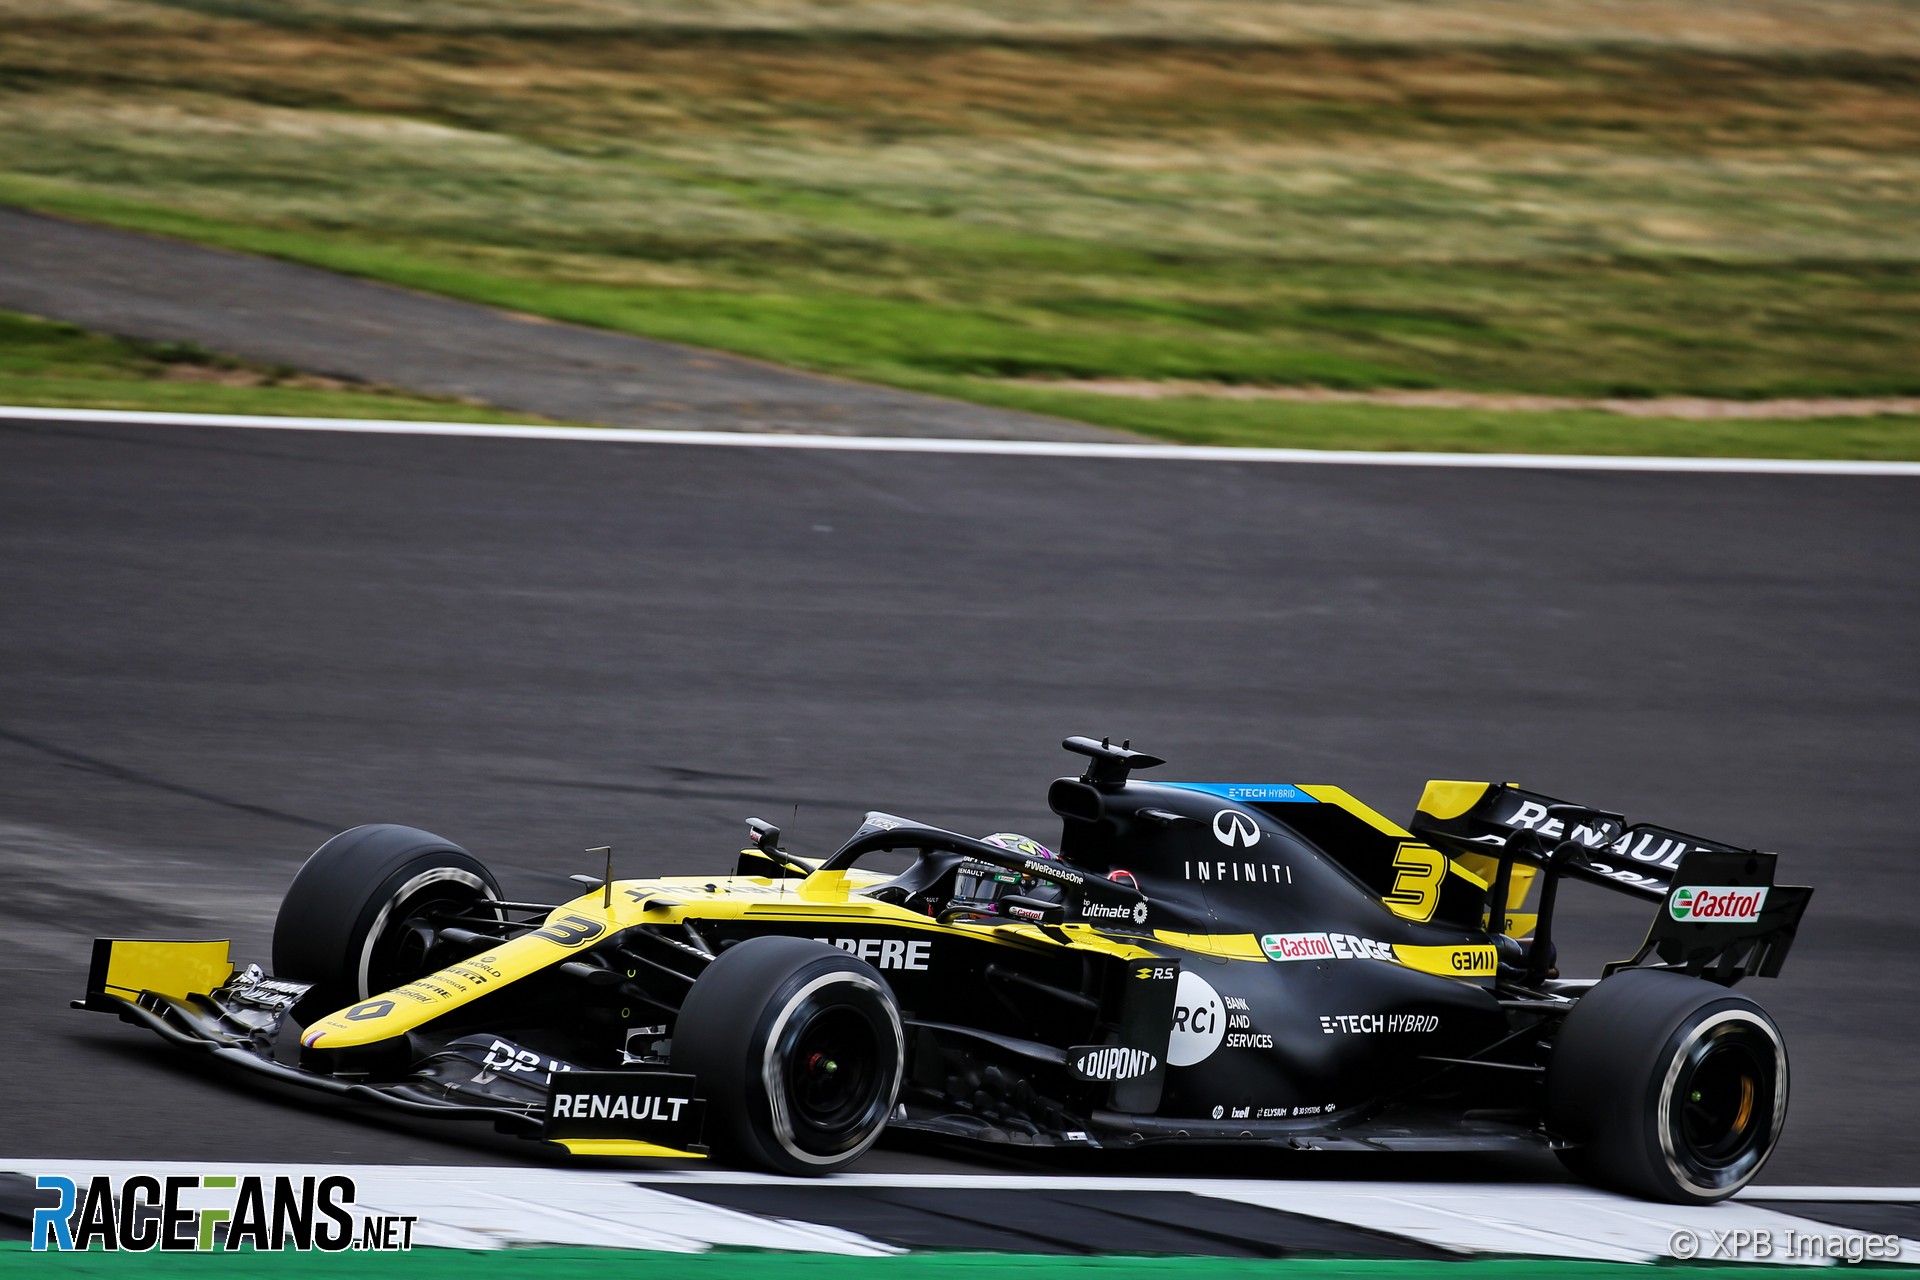 Daniel Ricciardo, Renault, Silverstone, 2020